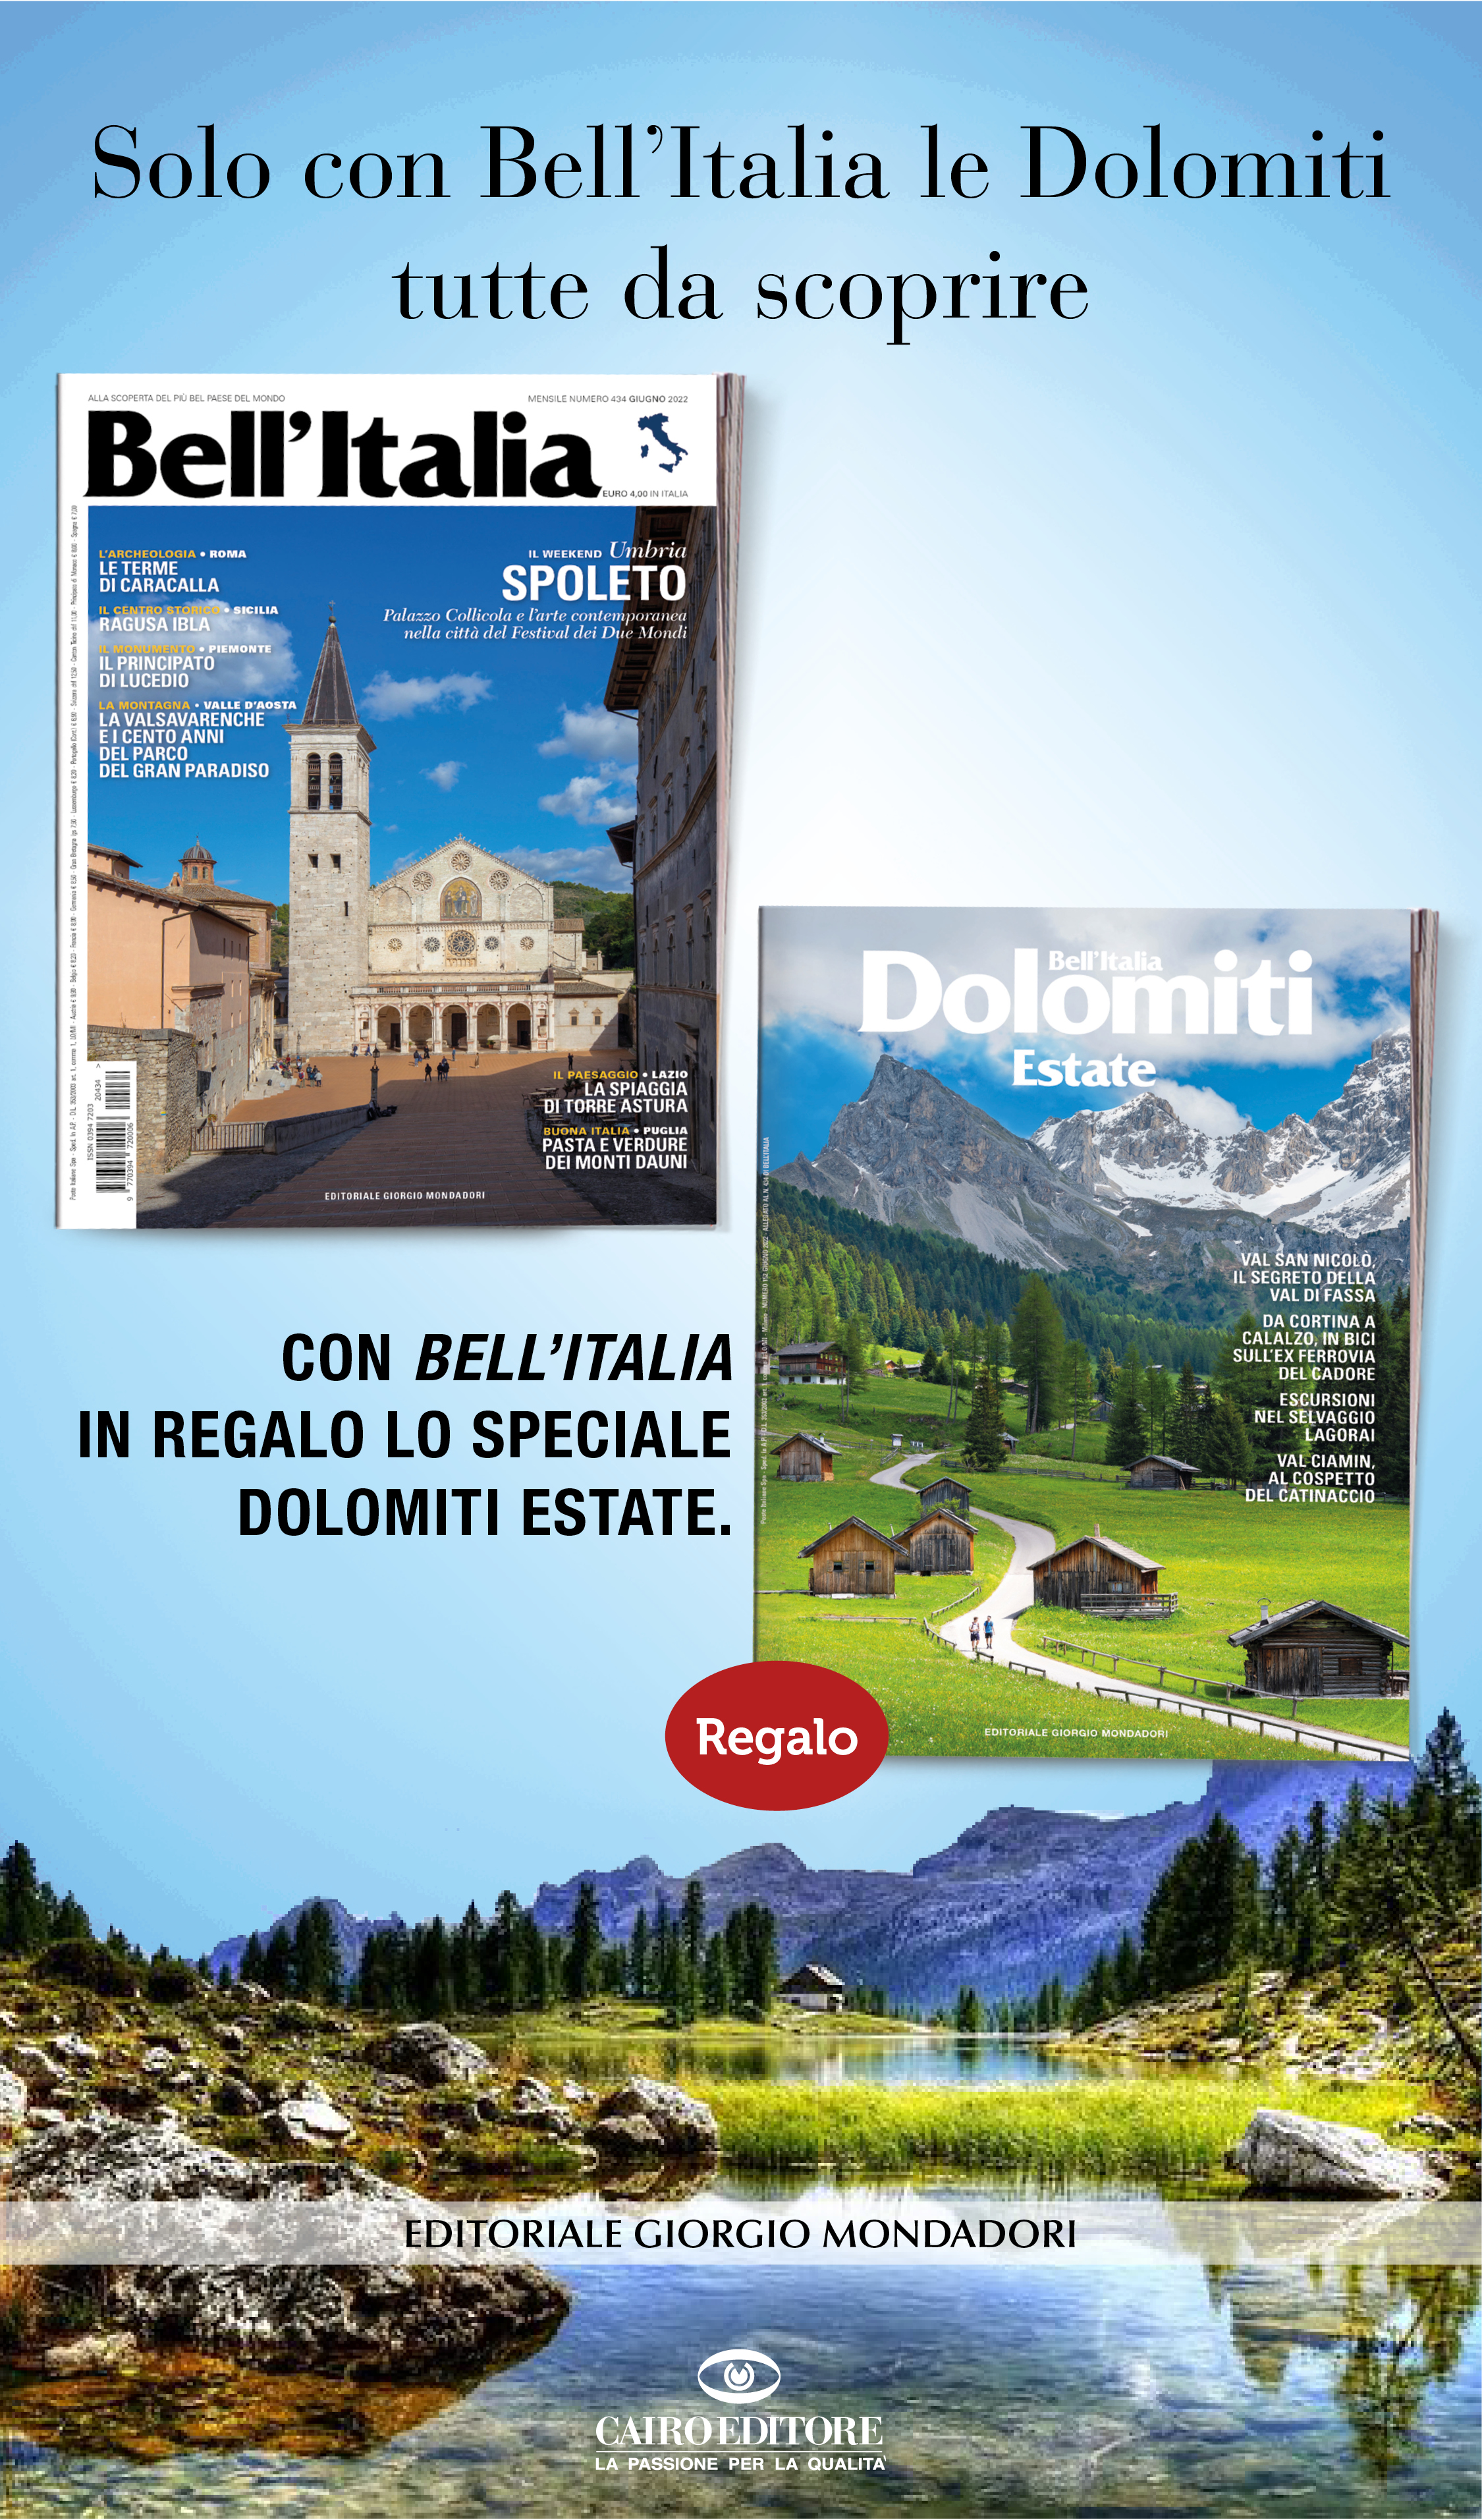 Solo con Bell’Italia le Dolomiti  tutte da scoprire